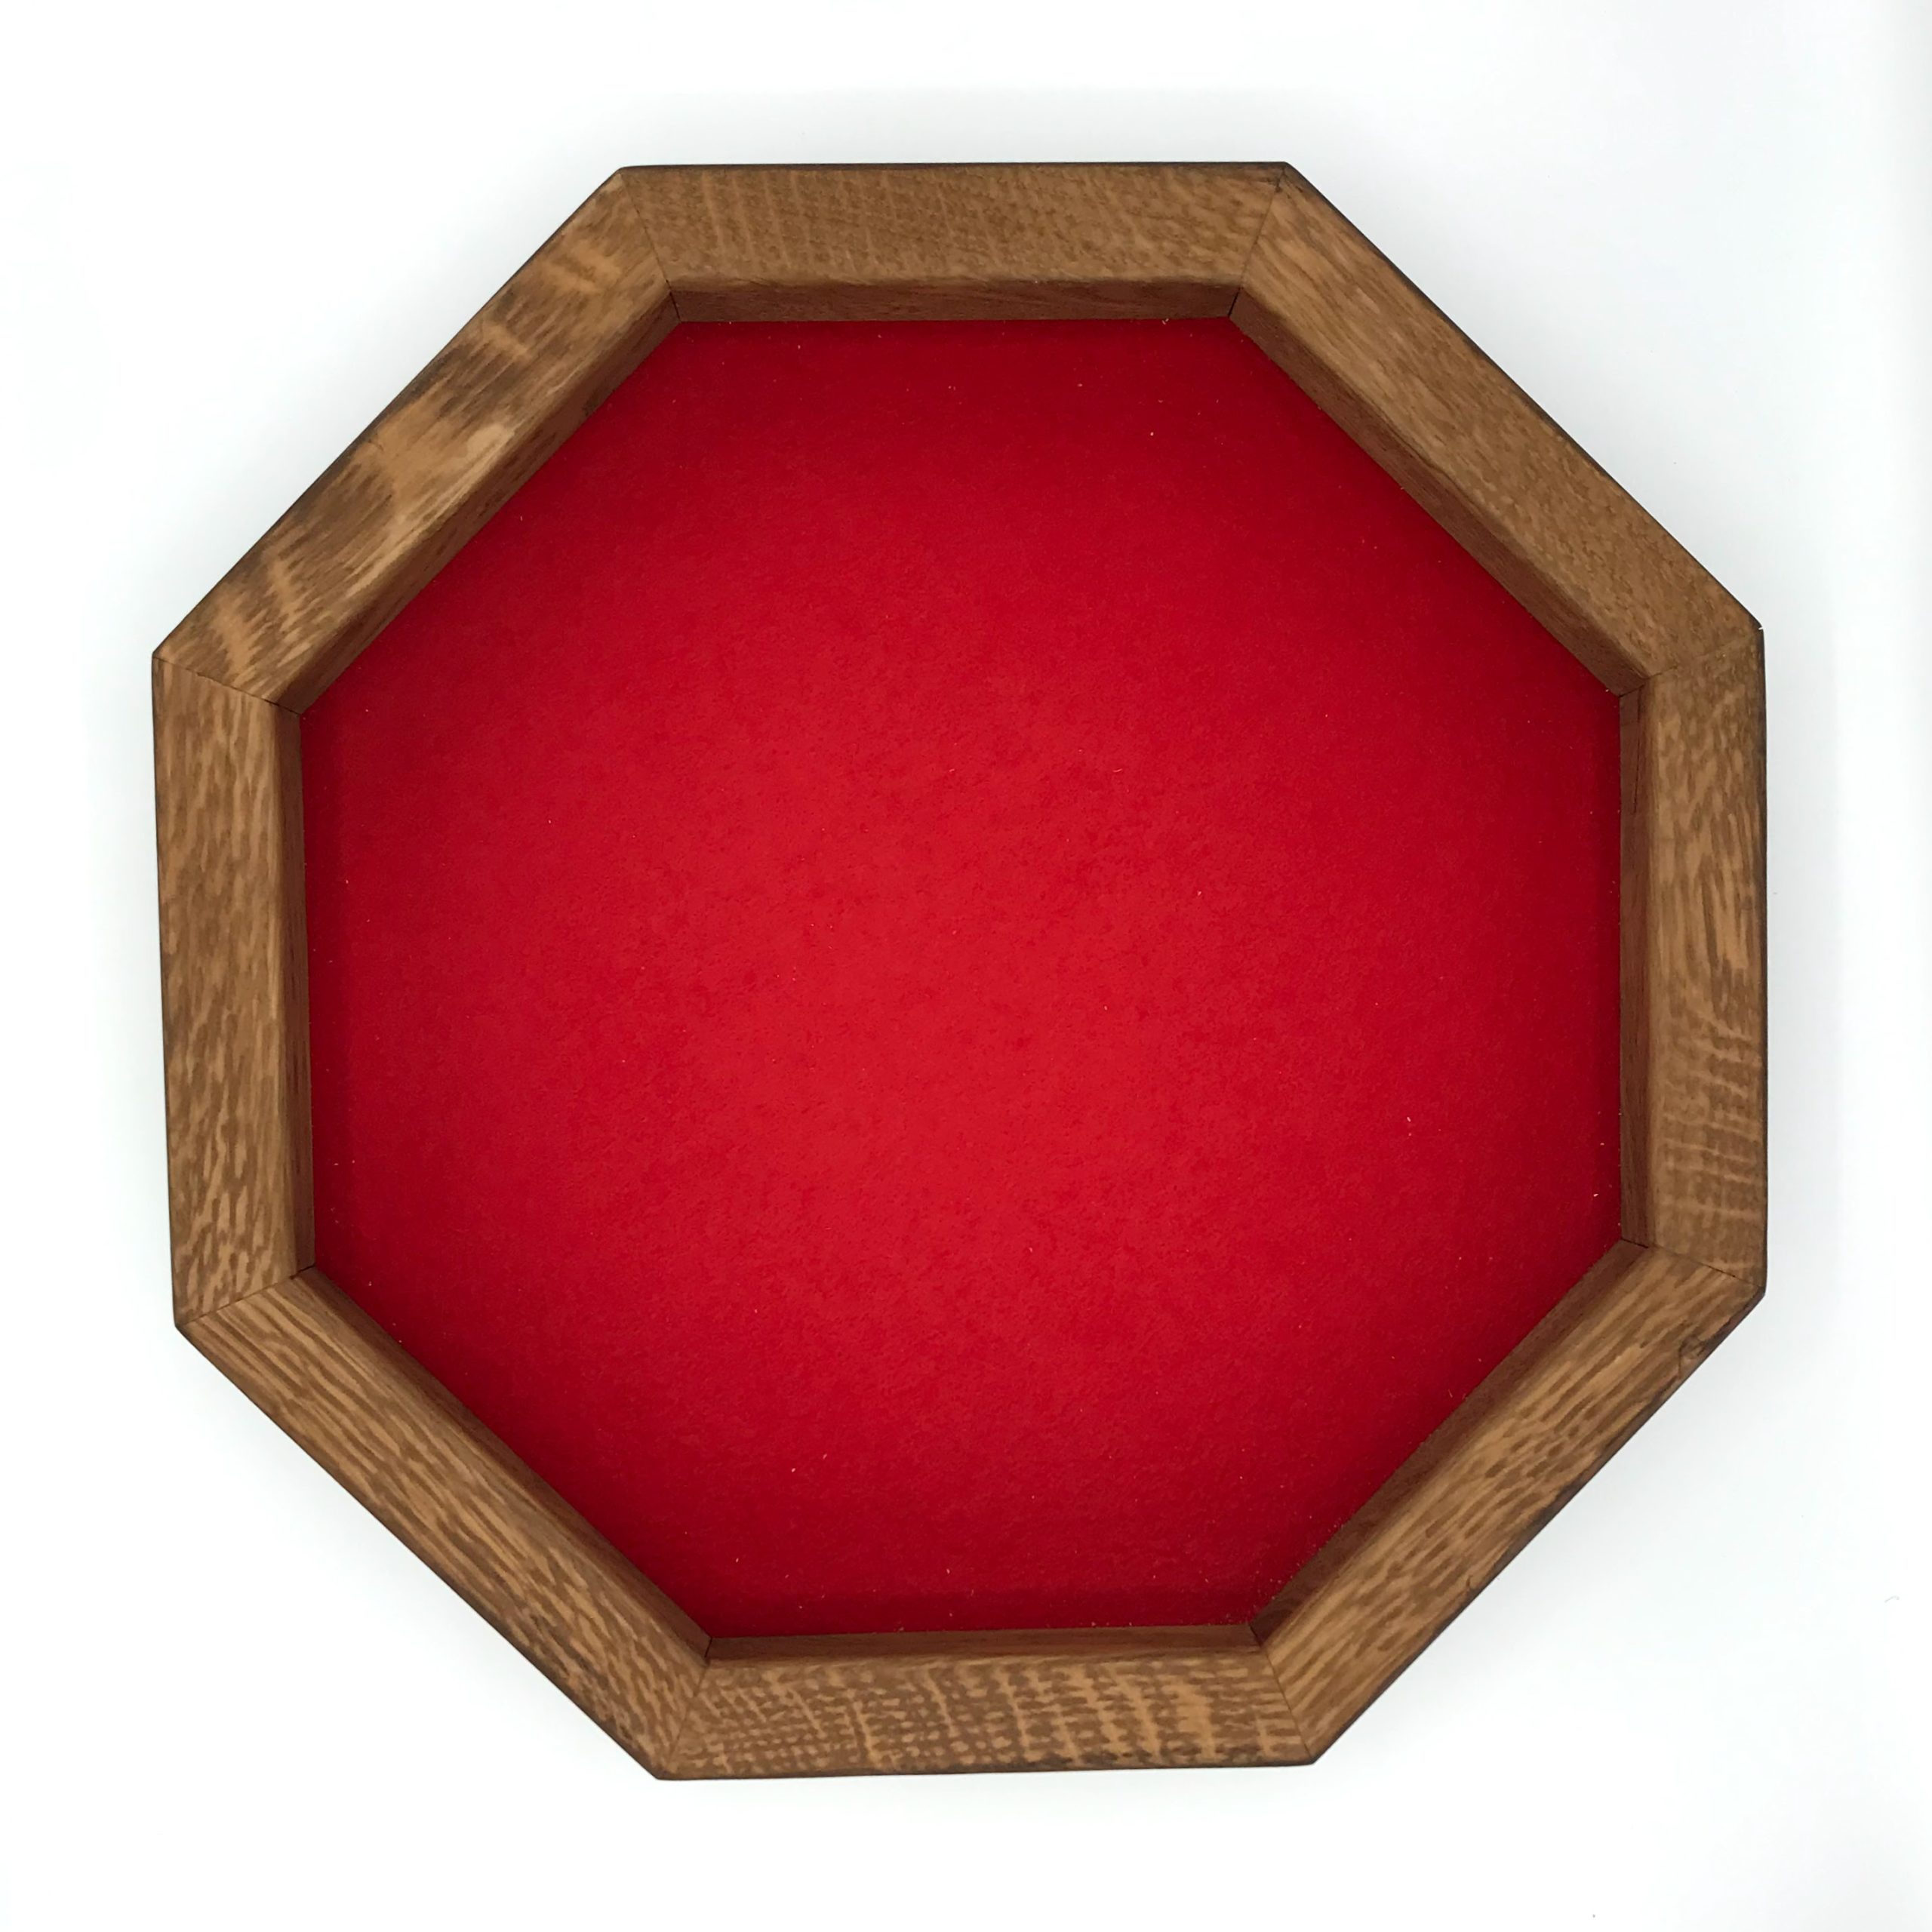 Texte alt : Description : Pin teinte foncée - fond feutrine rouge - 38cm - 4cm de large #pietjesbak #bac #421